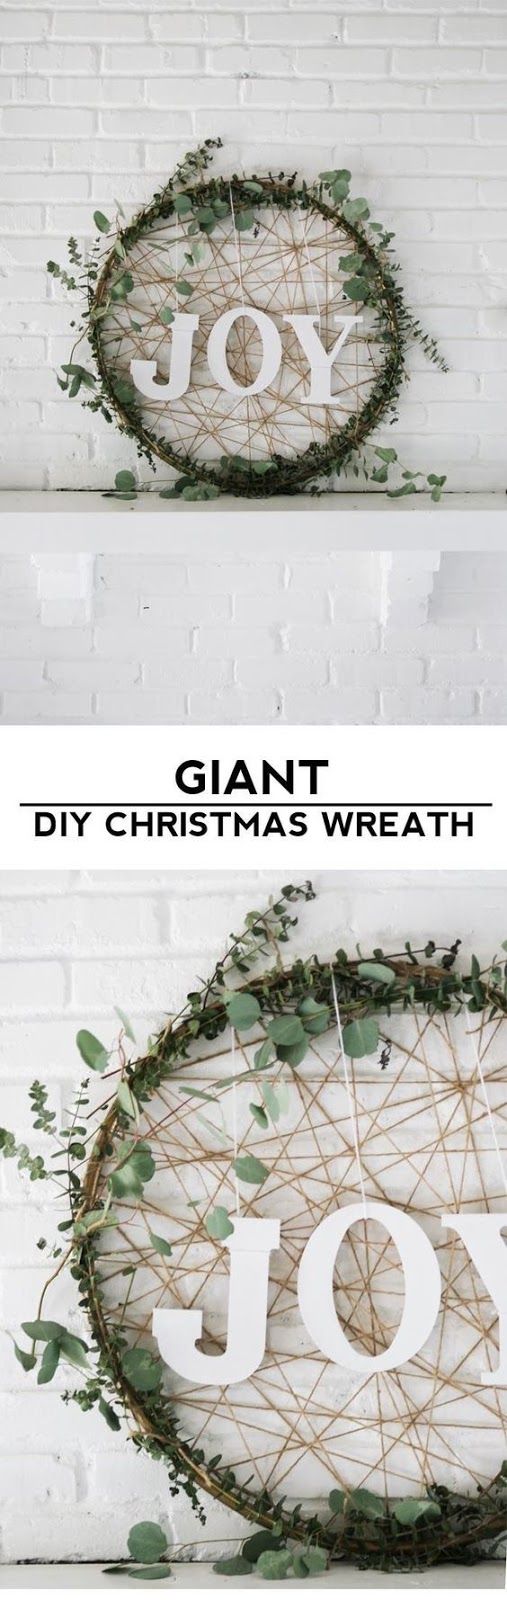 GIANT DIY CHRISTMAS WREATH